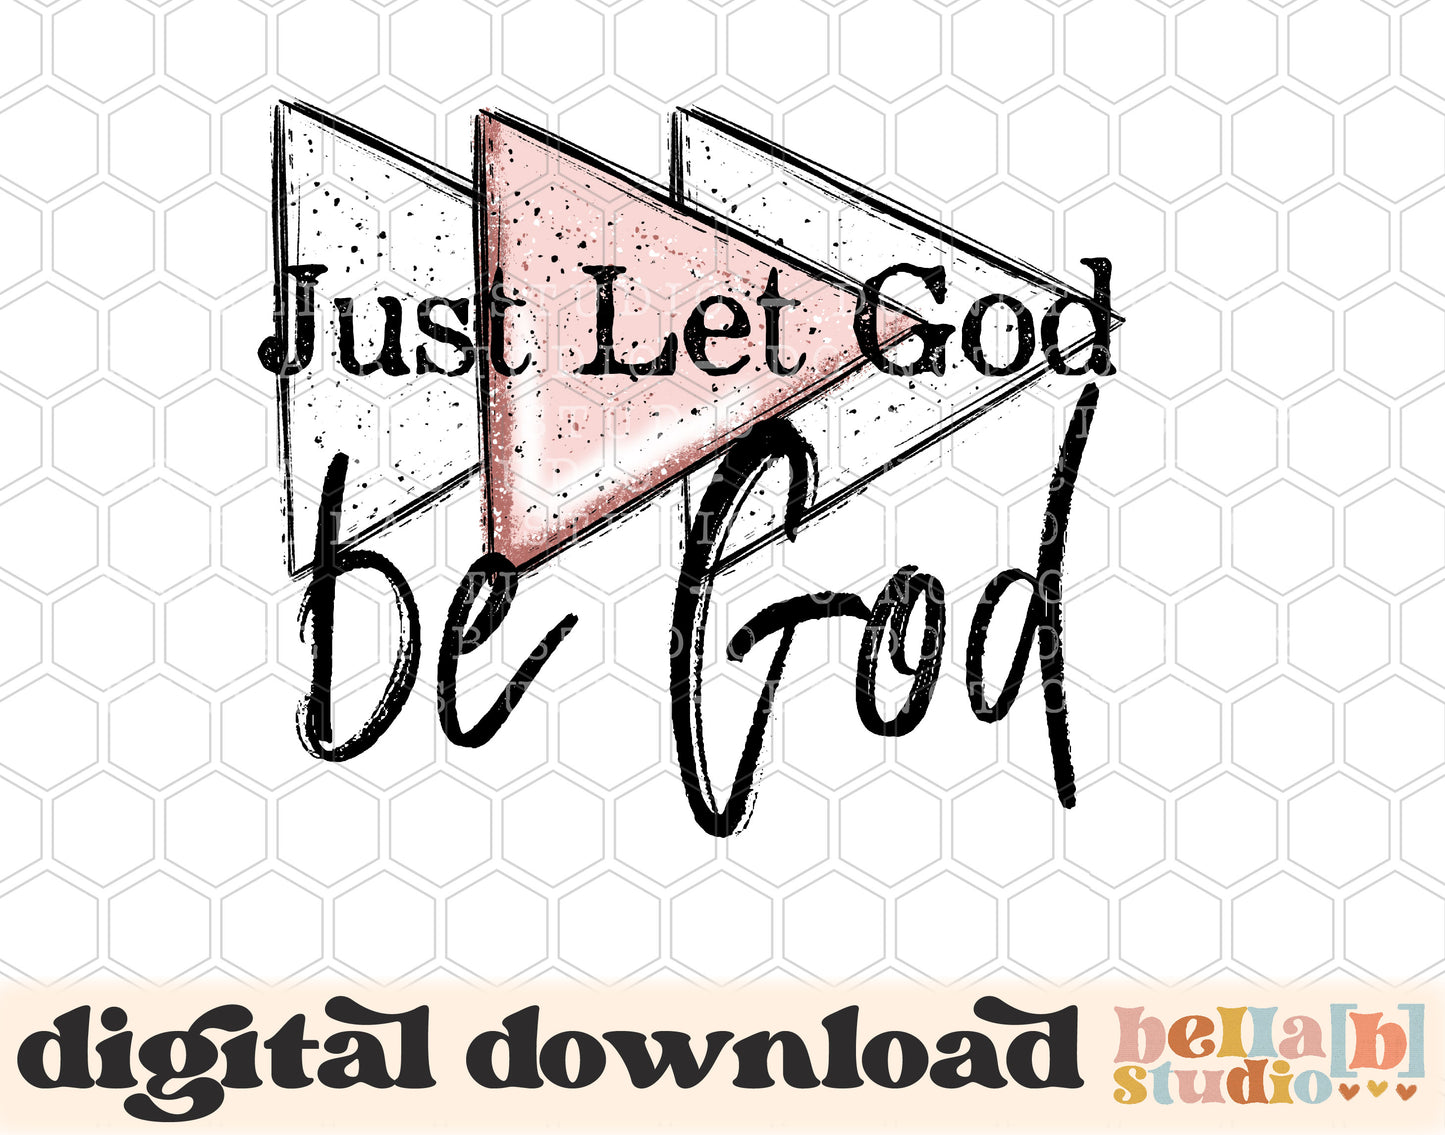 Just Let God Be God PNG Design